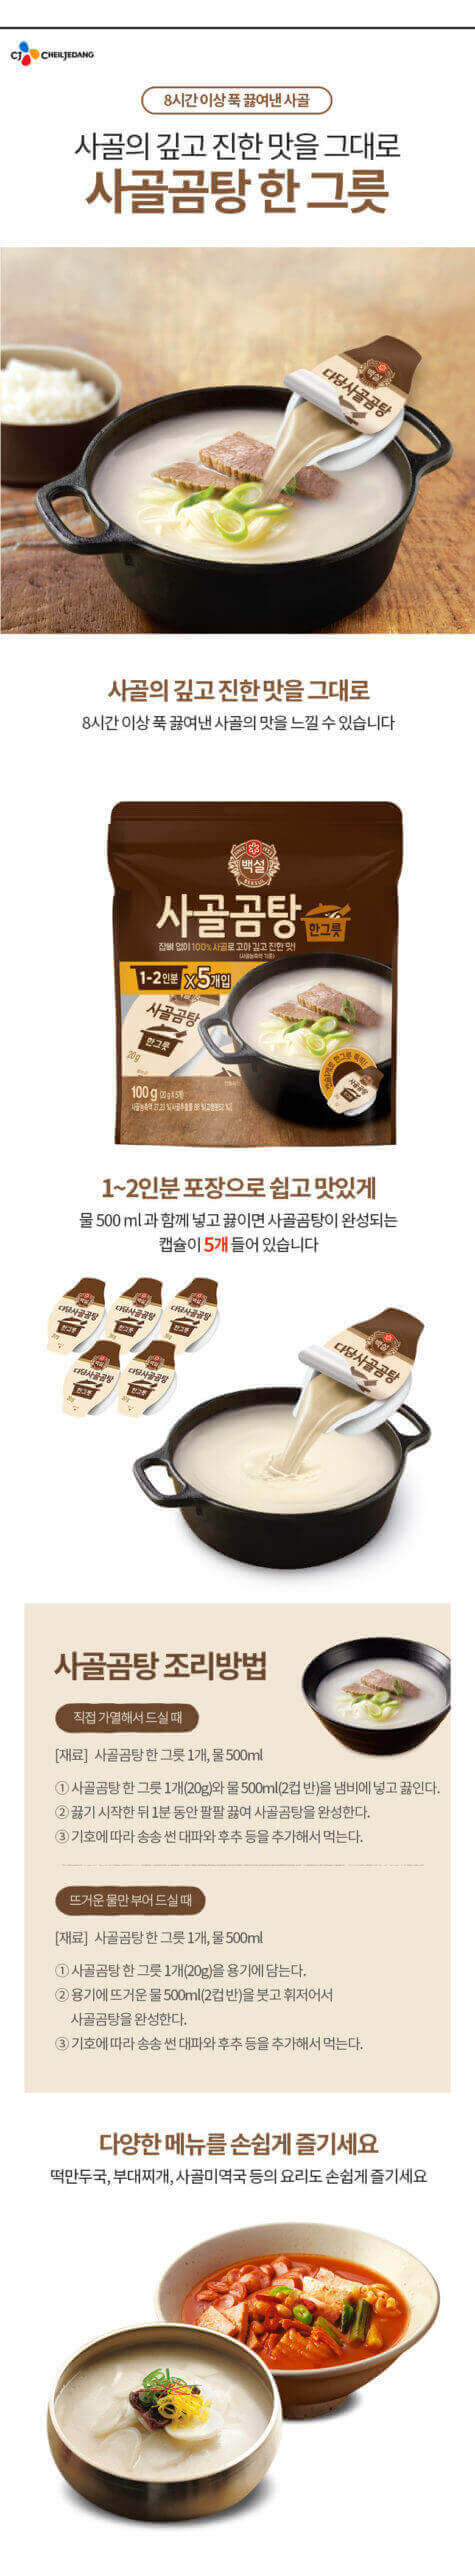 韓國食品-[CJ] Beksul Beef Bone Stew Stock 100g